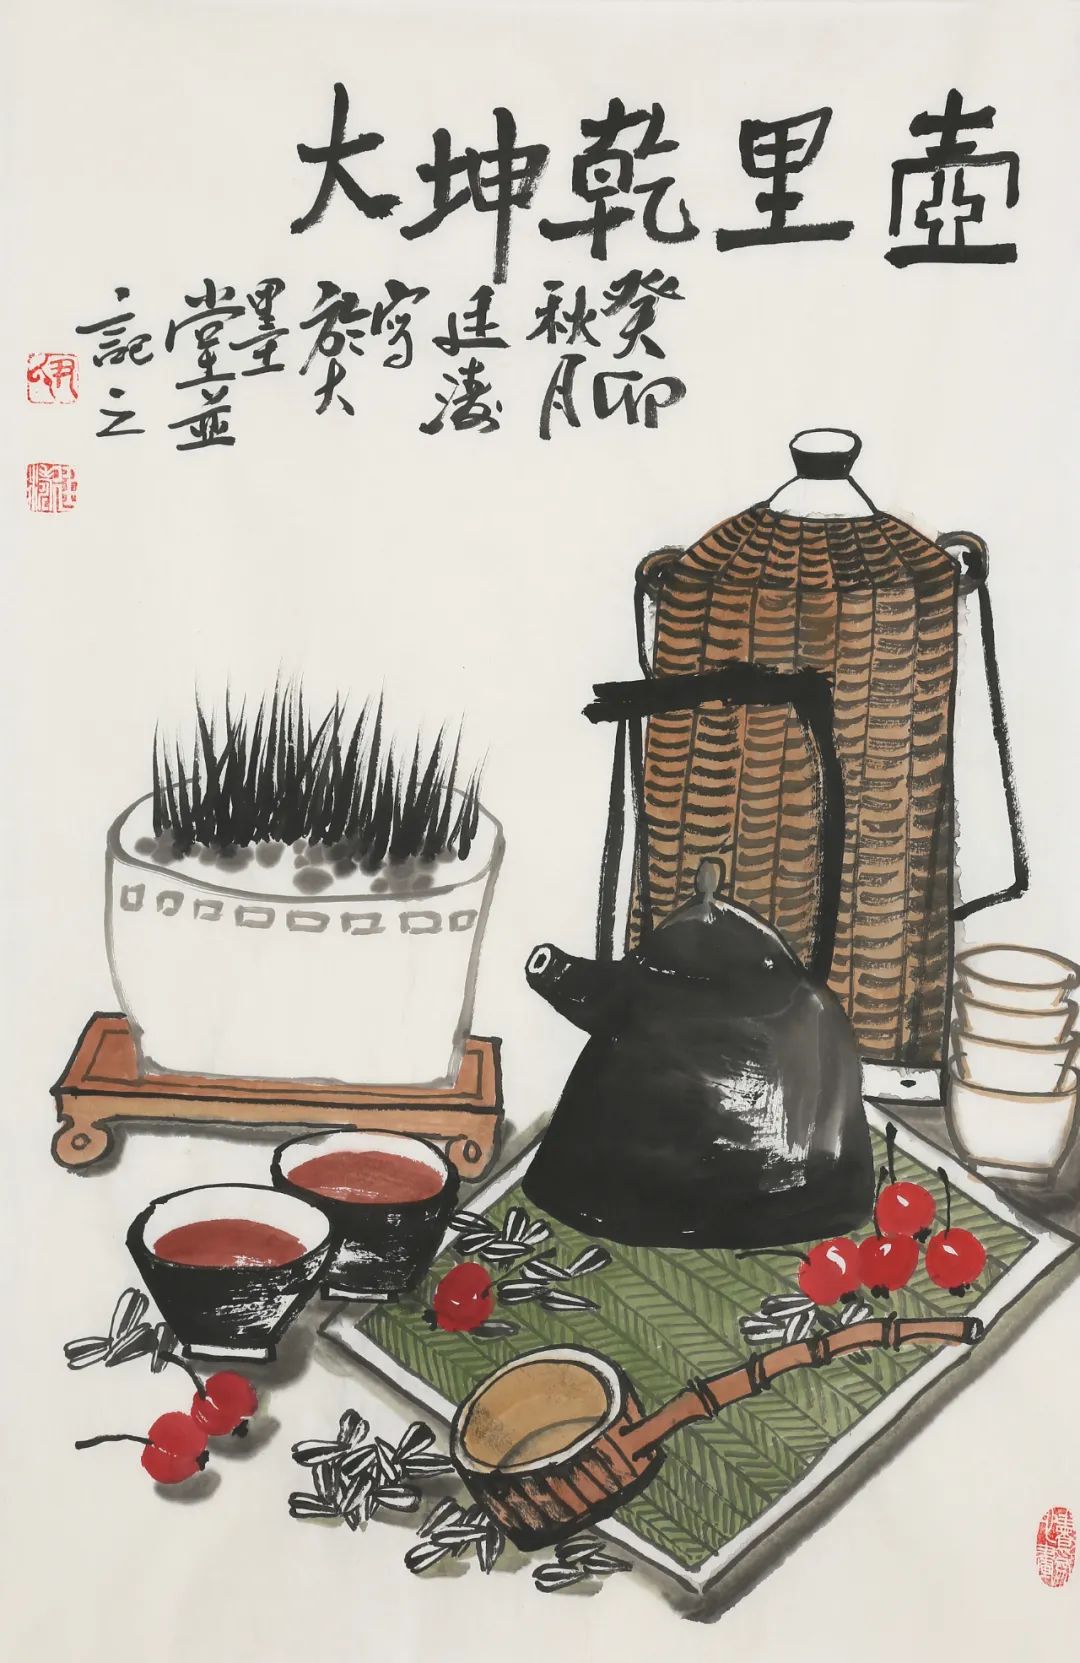 尹廷涛丨“农”字是我的本名，熟悉的生活体验才能激发创作灵感